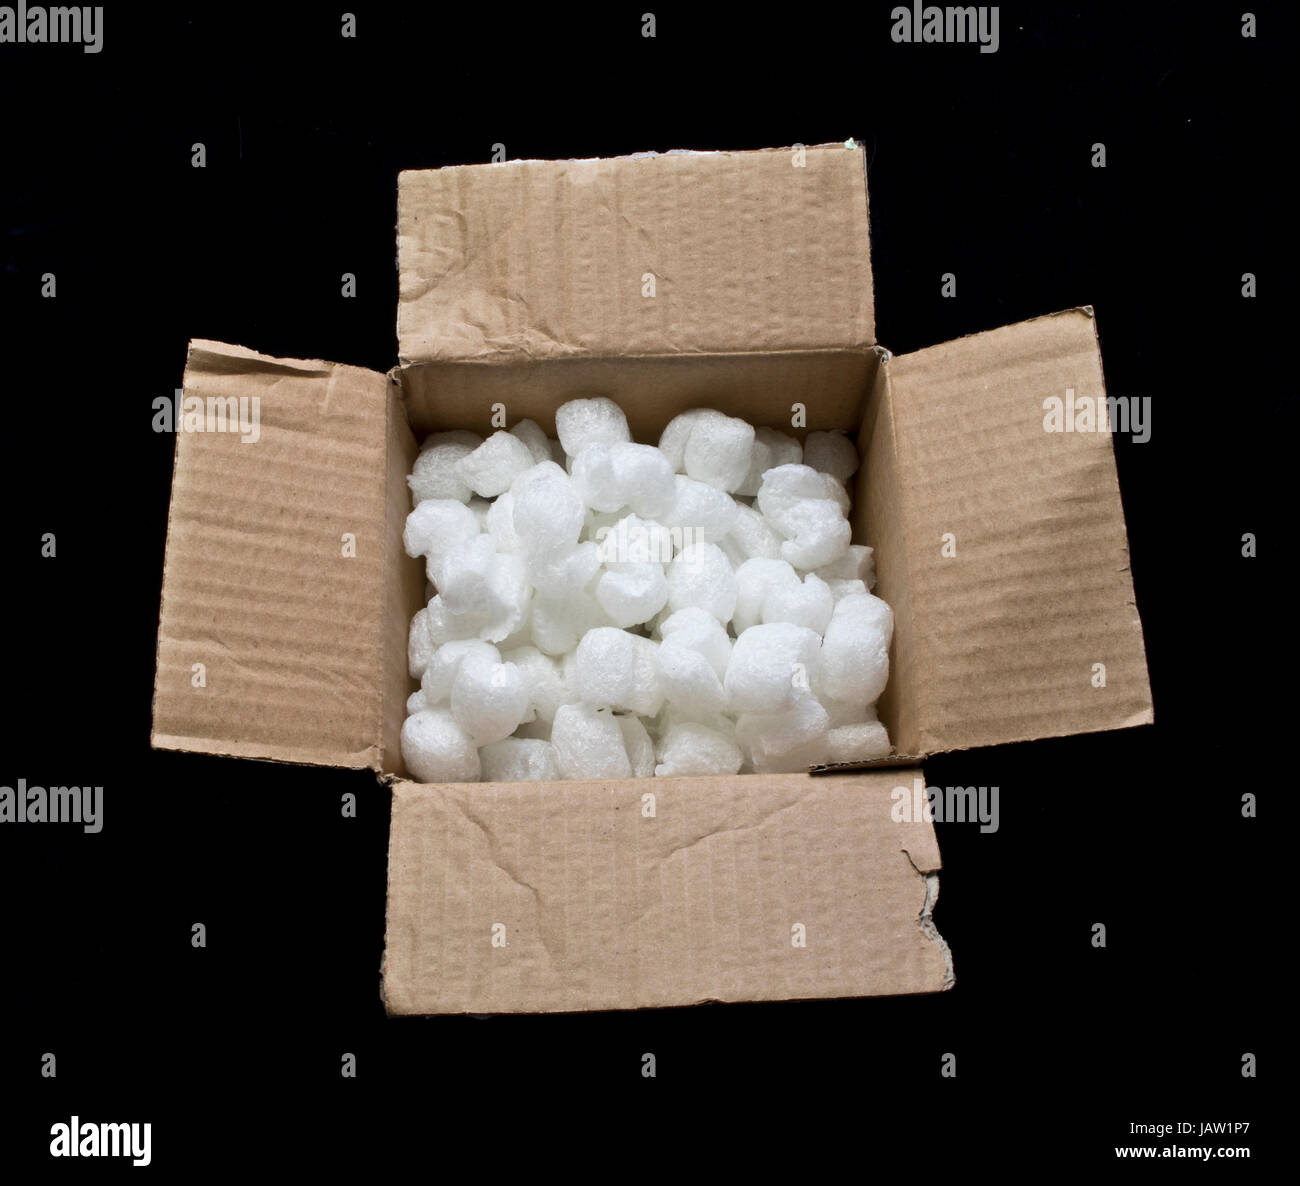 Schaumstoff Erdnuss in Box Verpackung Schutz während des Transports  Stockfotografie - Alamy